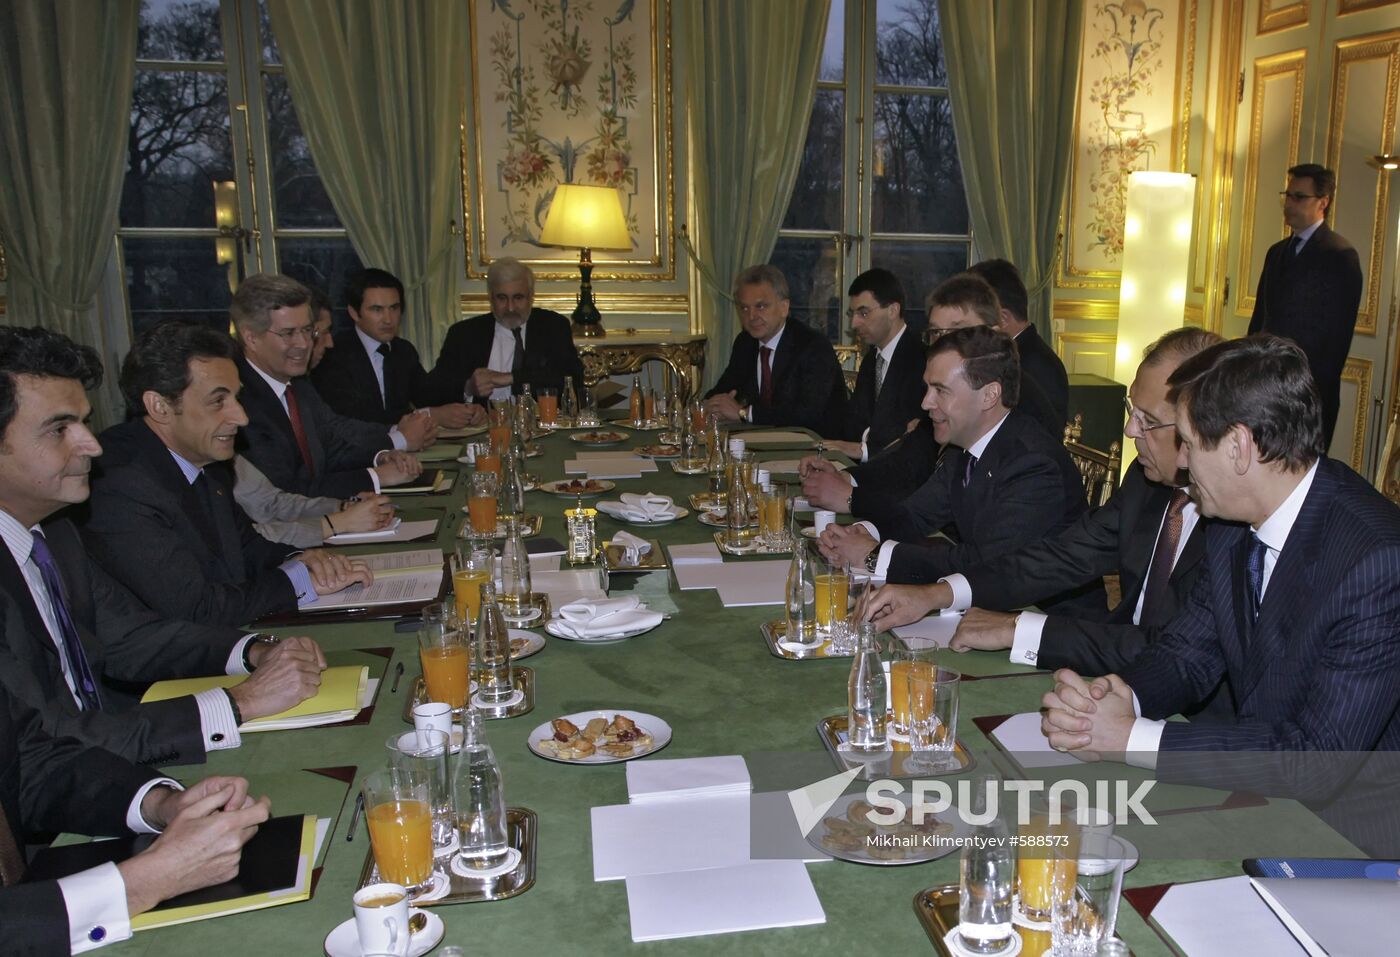 Official visit of D.Medvedev to Paris